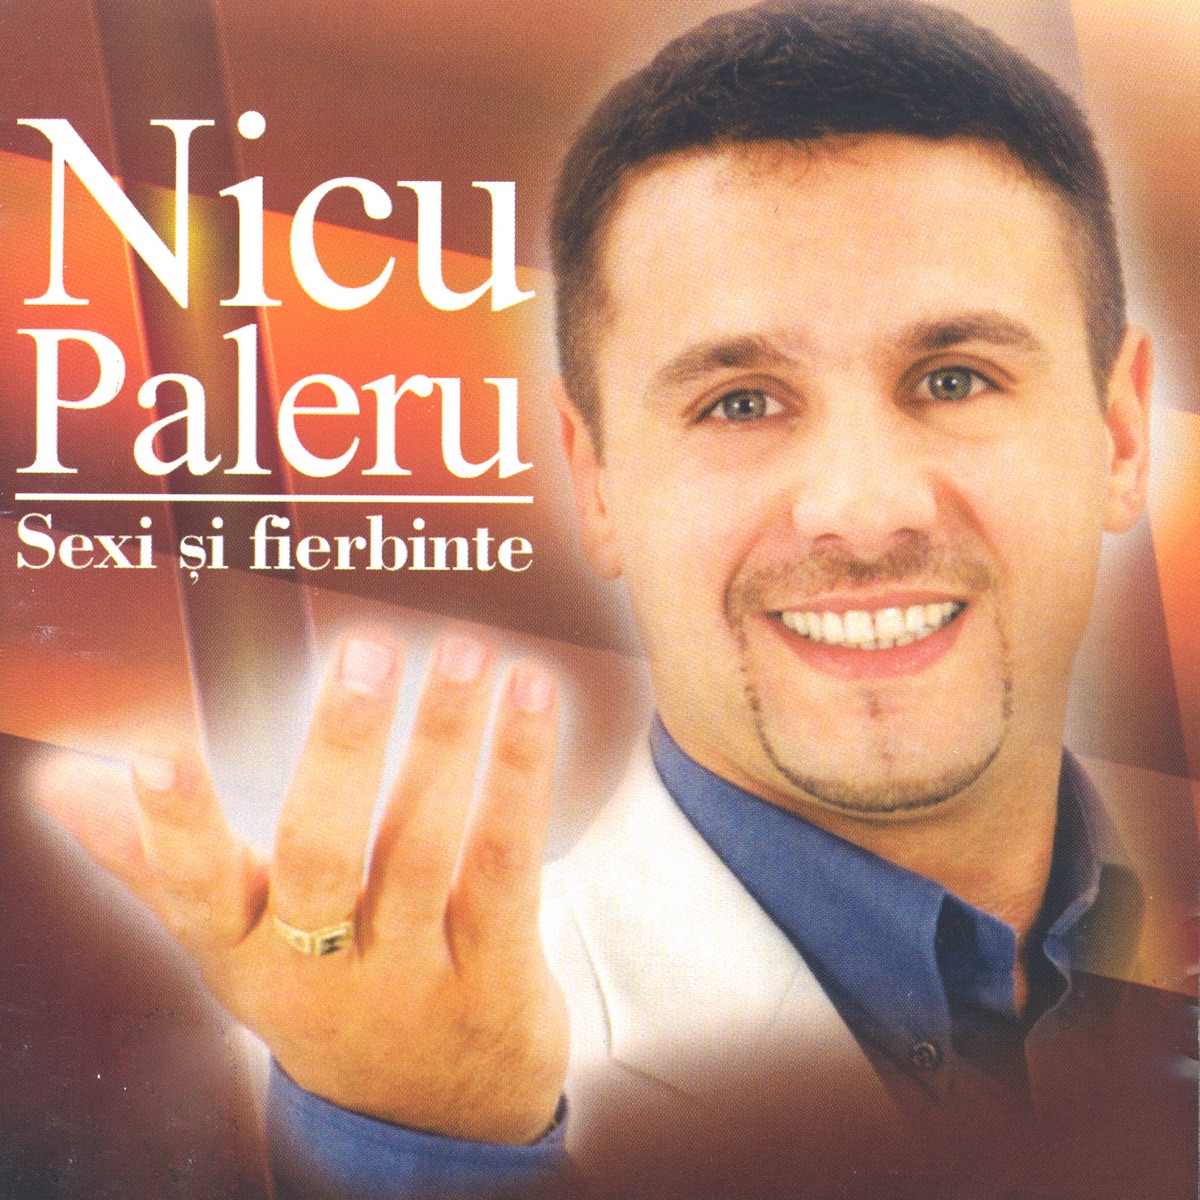 Nicu Paleru Best Hits, Vol. 4 by Nicu Paleru on Apple Music